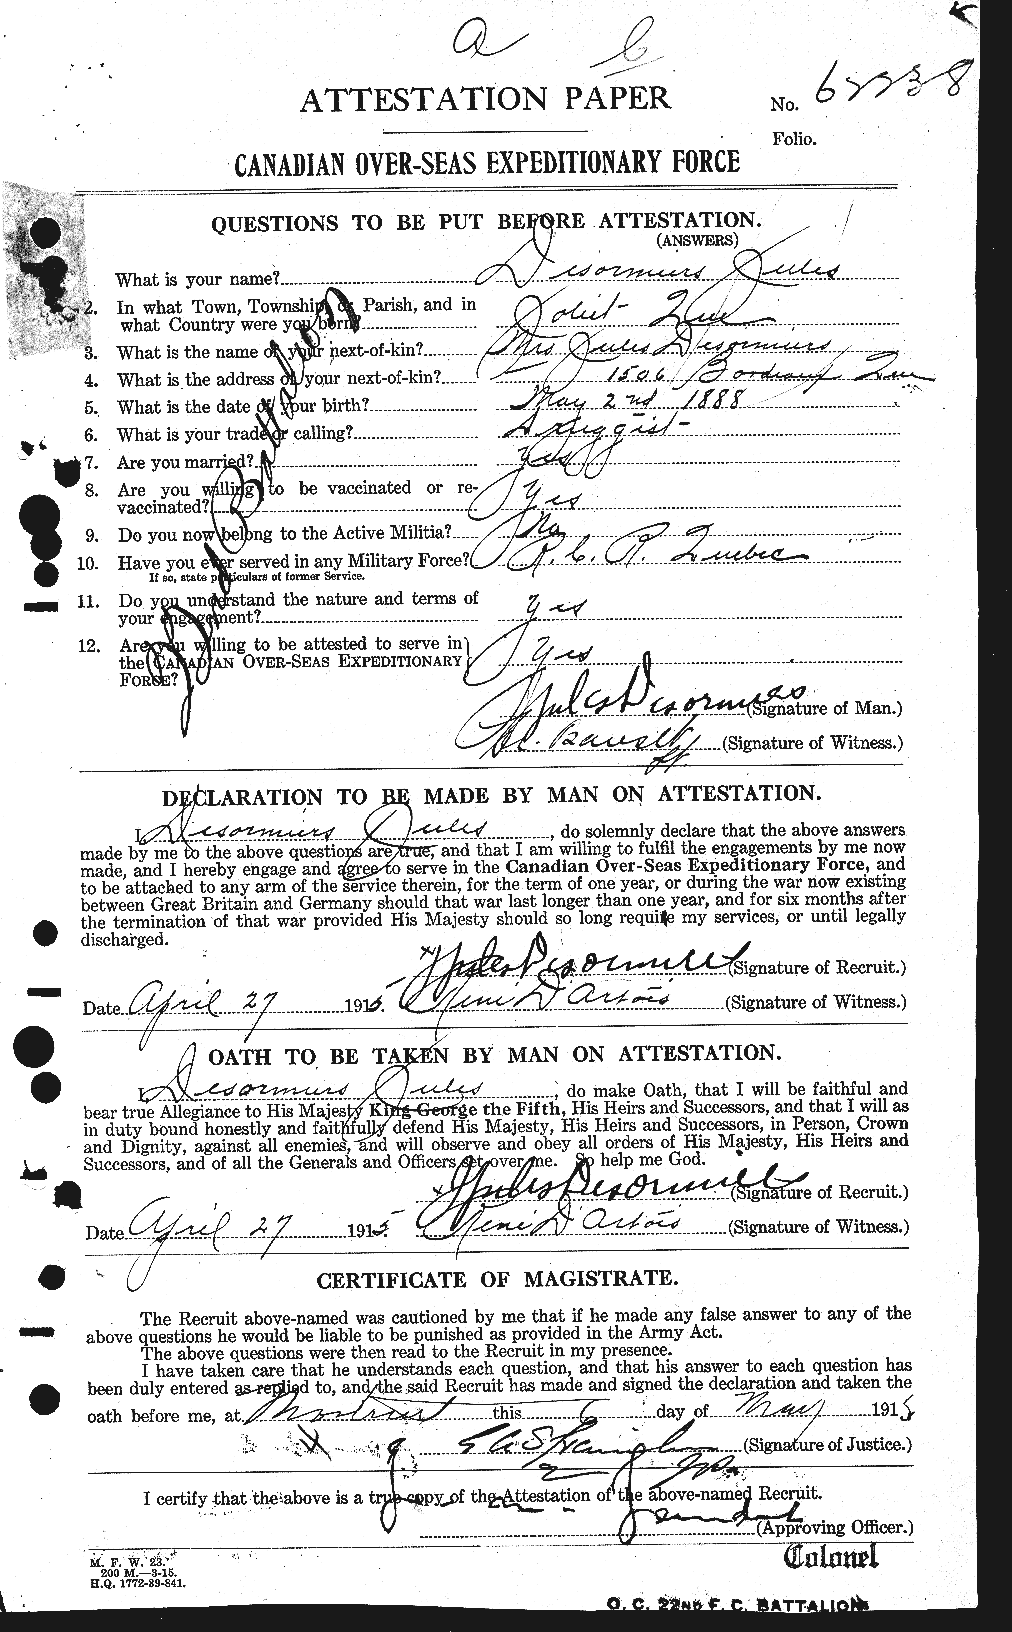 Dossiers du Personnel de la Première Guerre mondiale - CEC 291450a